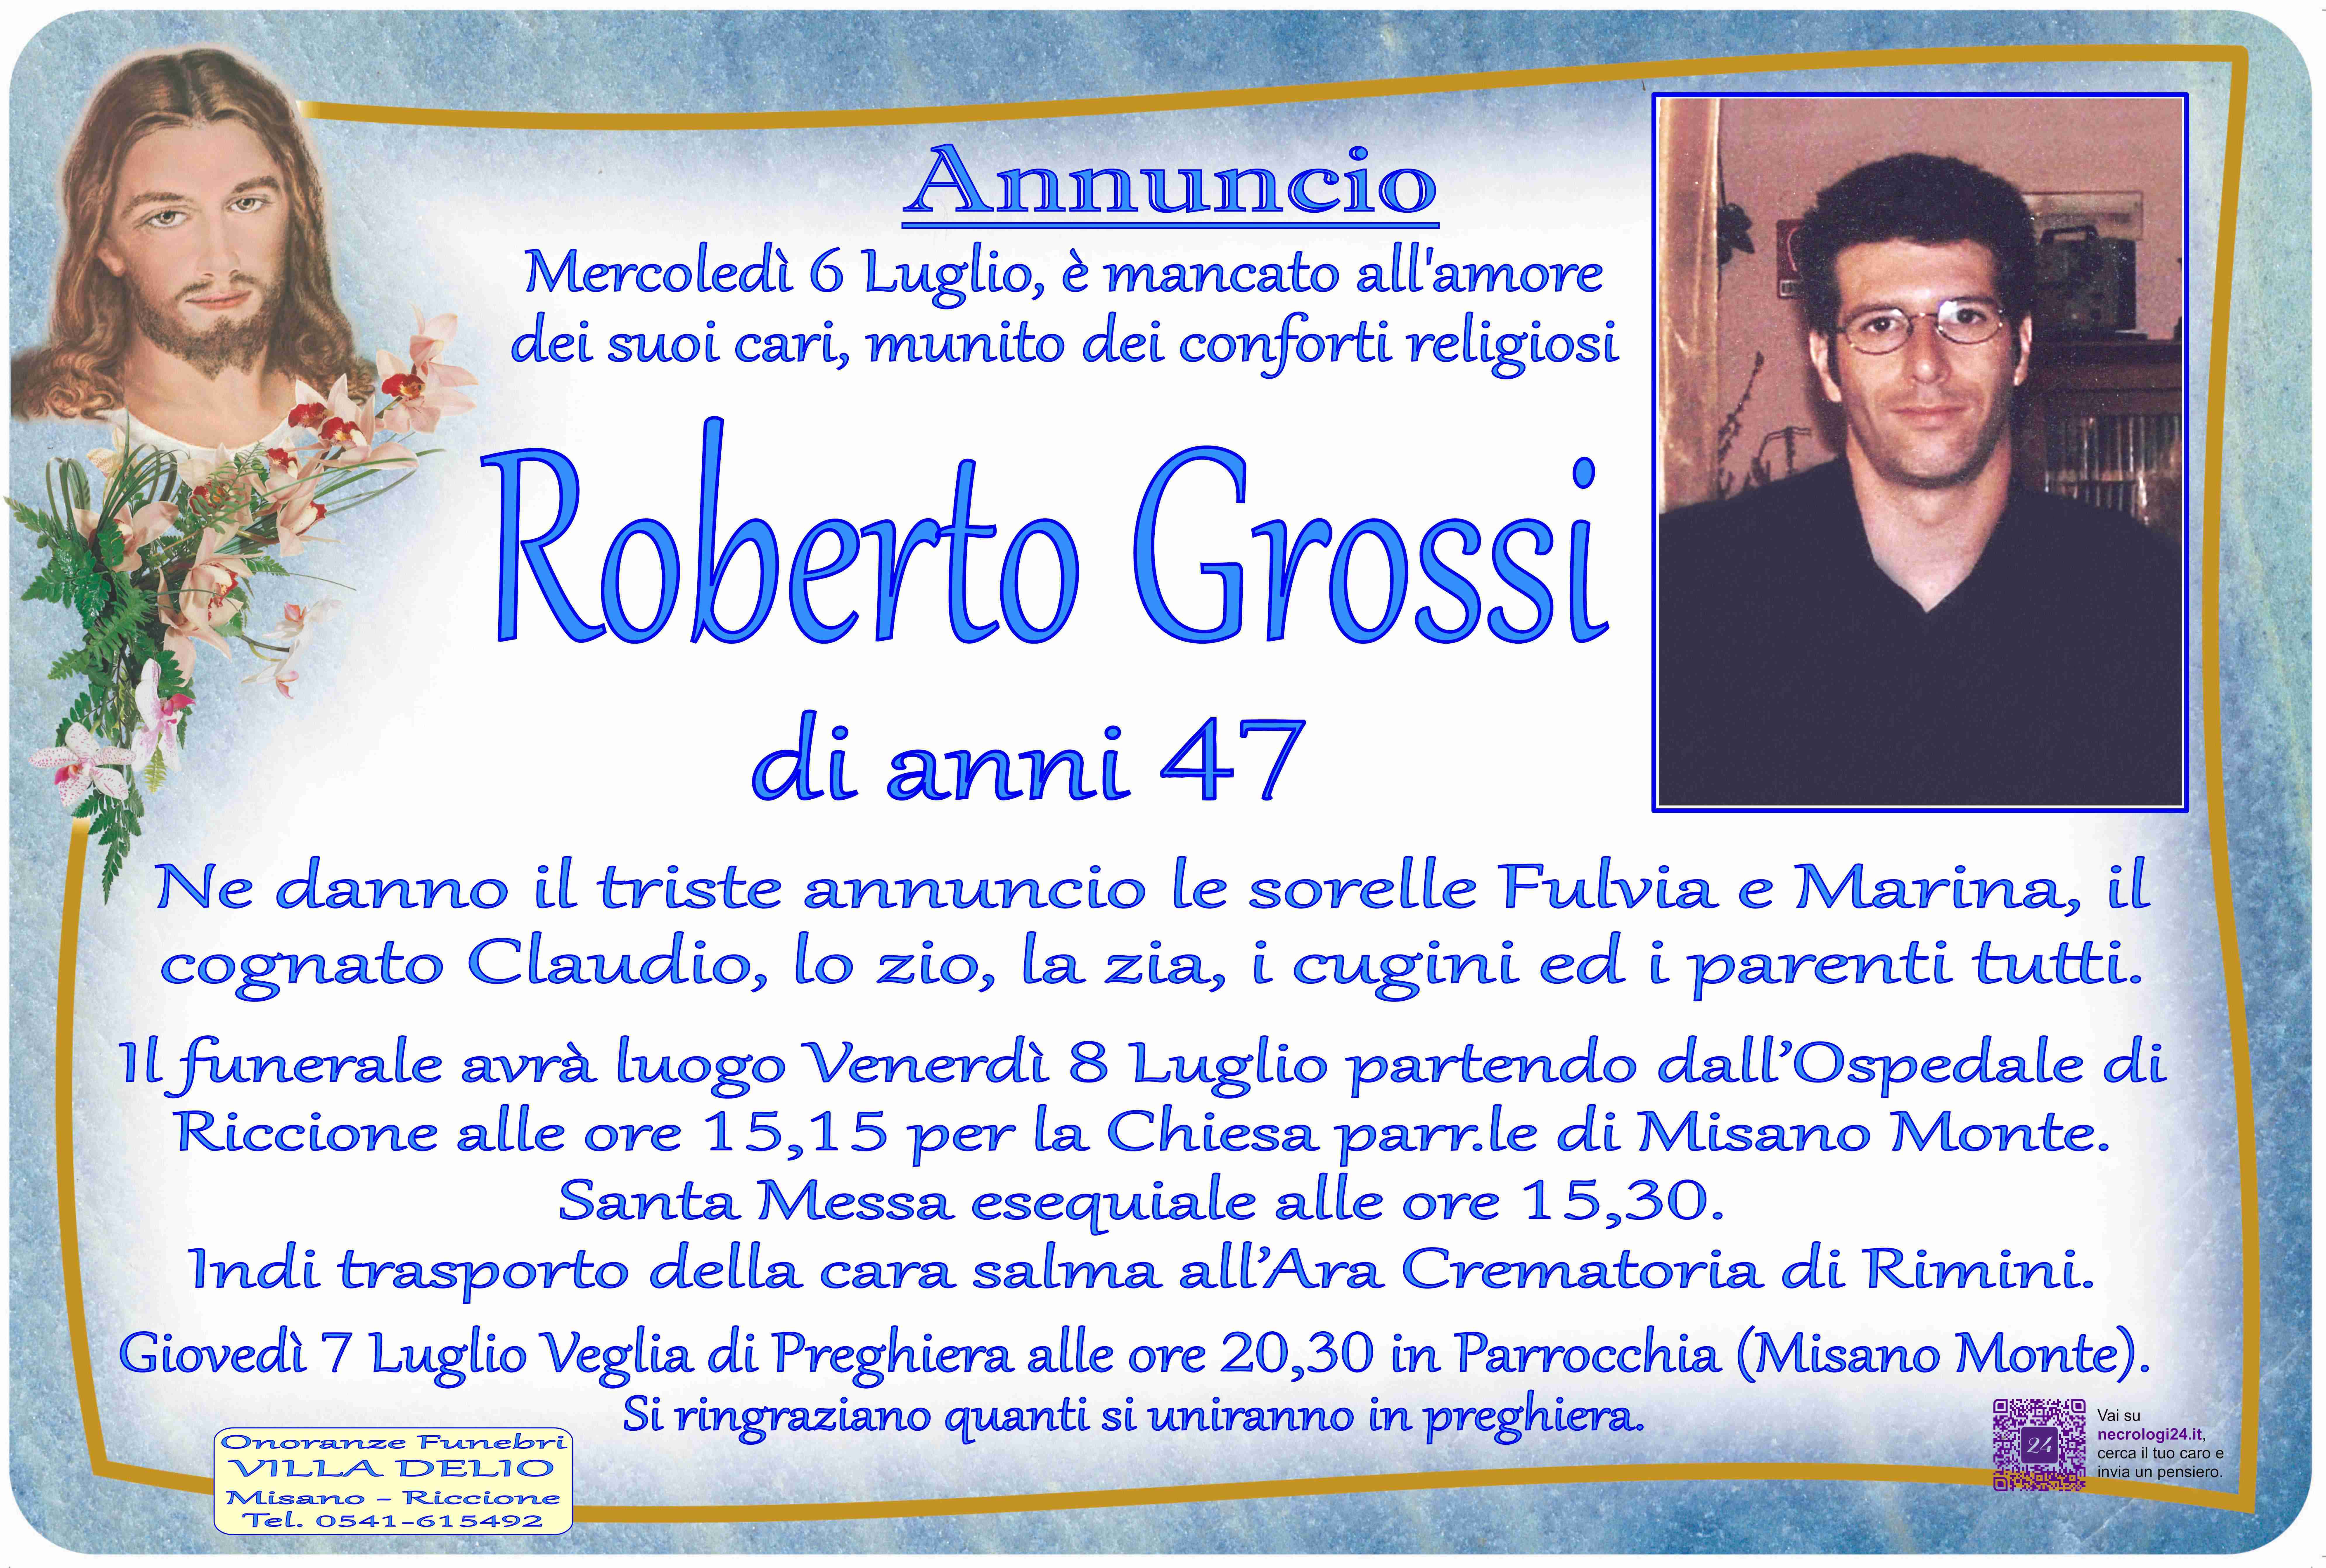 Roberto Grossi